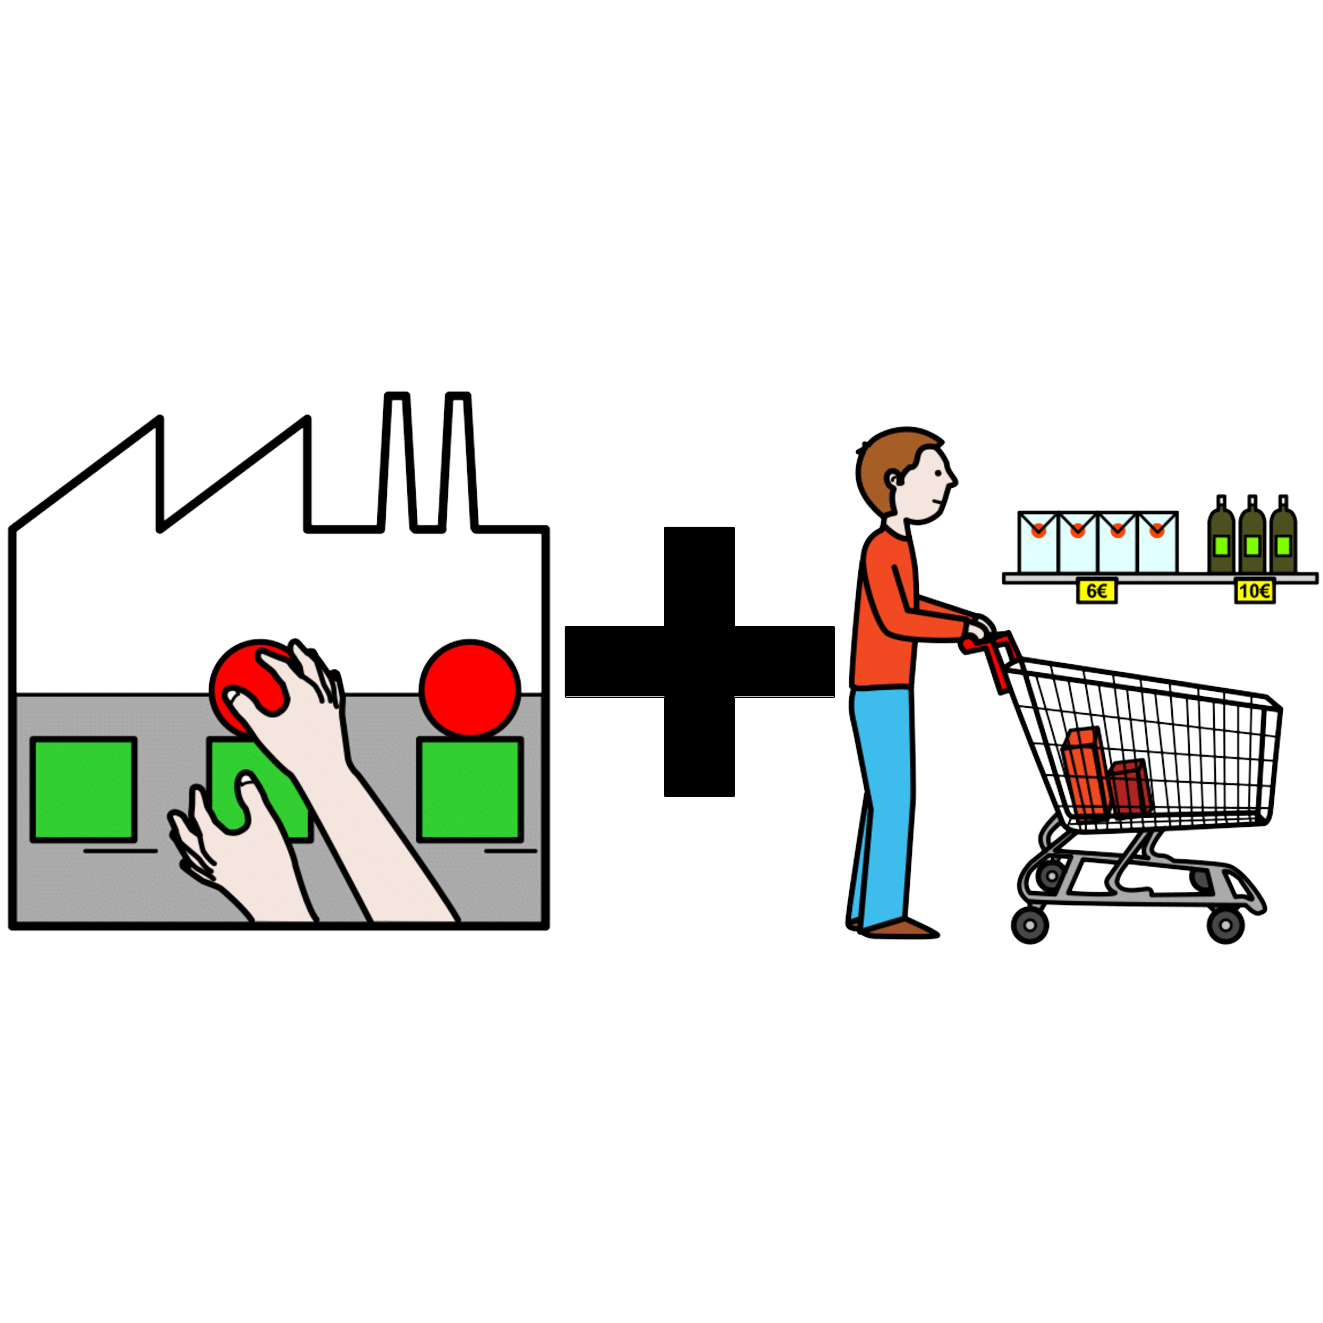  La imagen muestra una fábrica al lado izquierdo, una persona con un carrito de la compra con productos dentro y en estantes a la derecha y, entre ambos, el signo más.